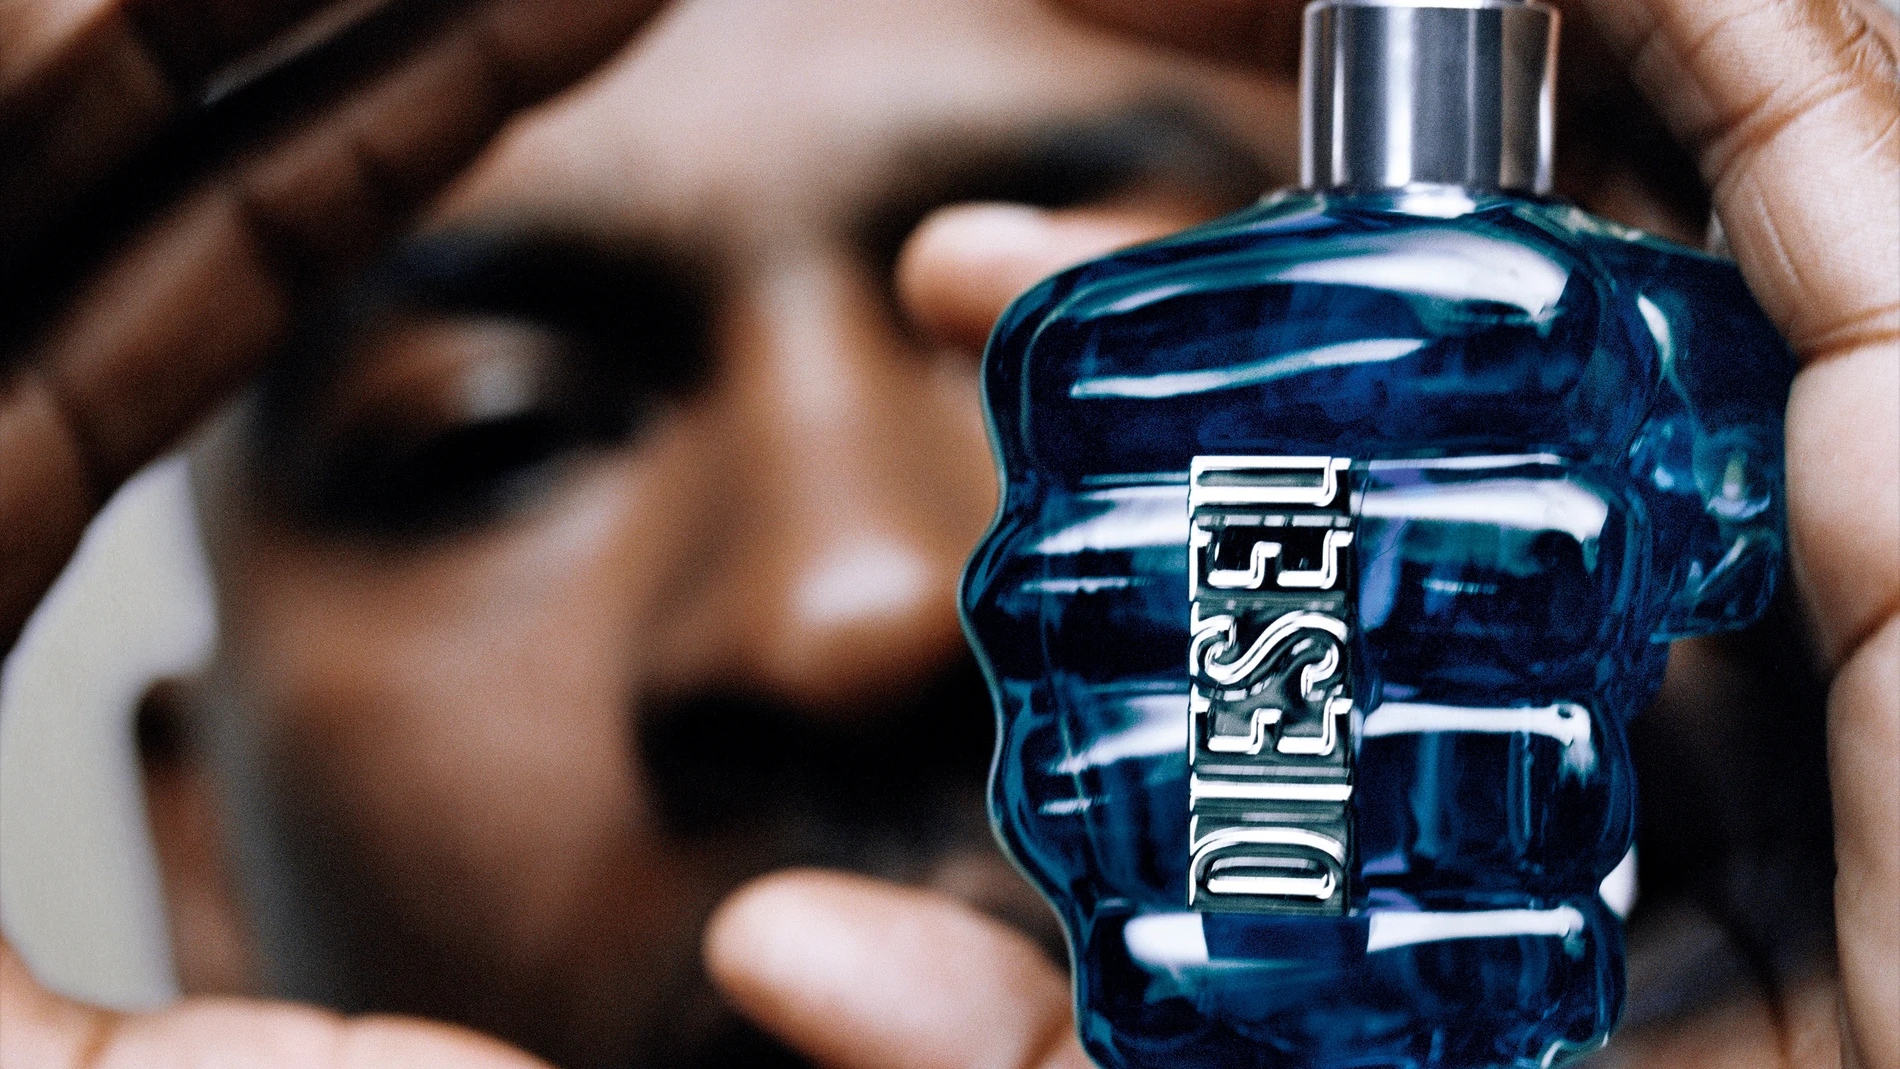 Perfume Only The Brave para Hombre de Diesel– Arome México